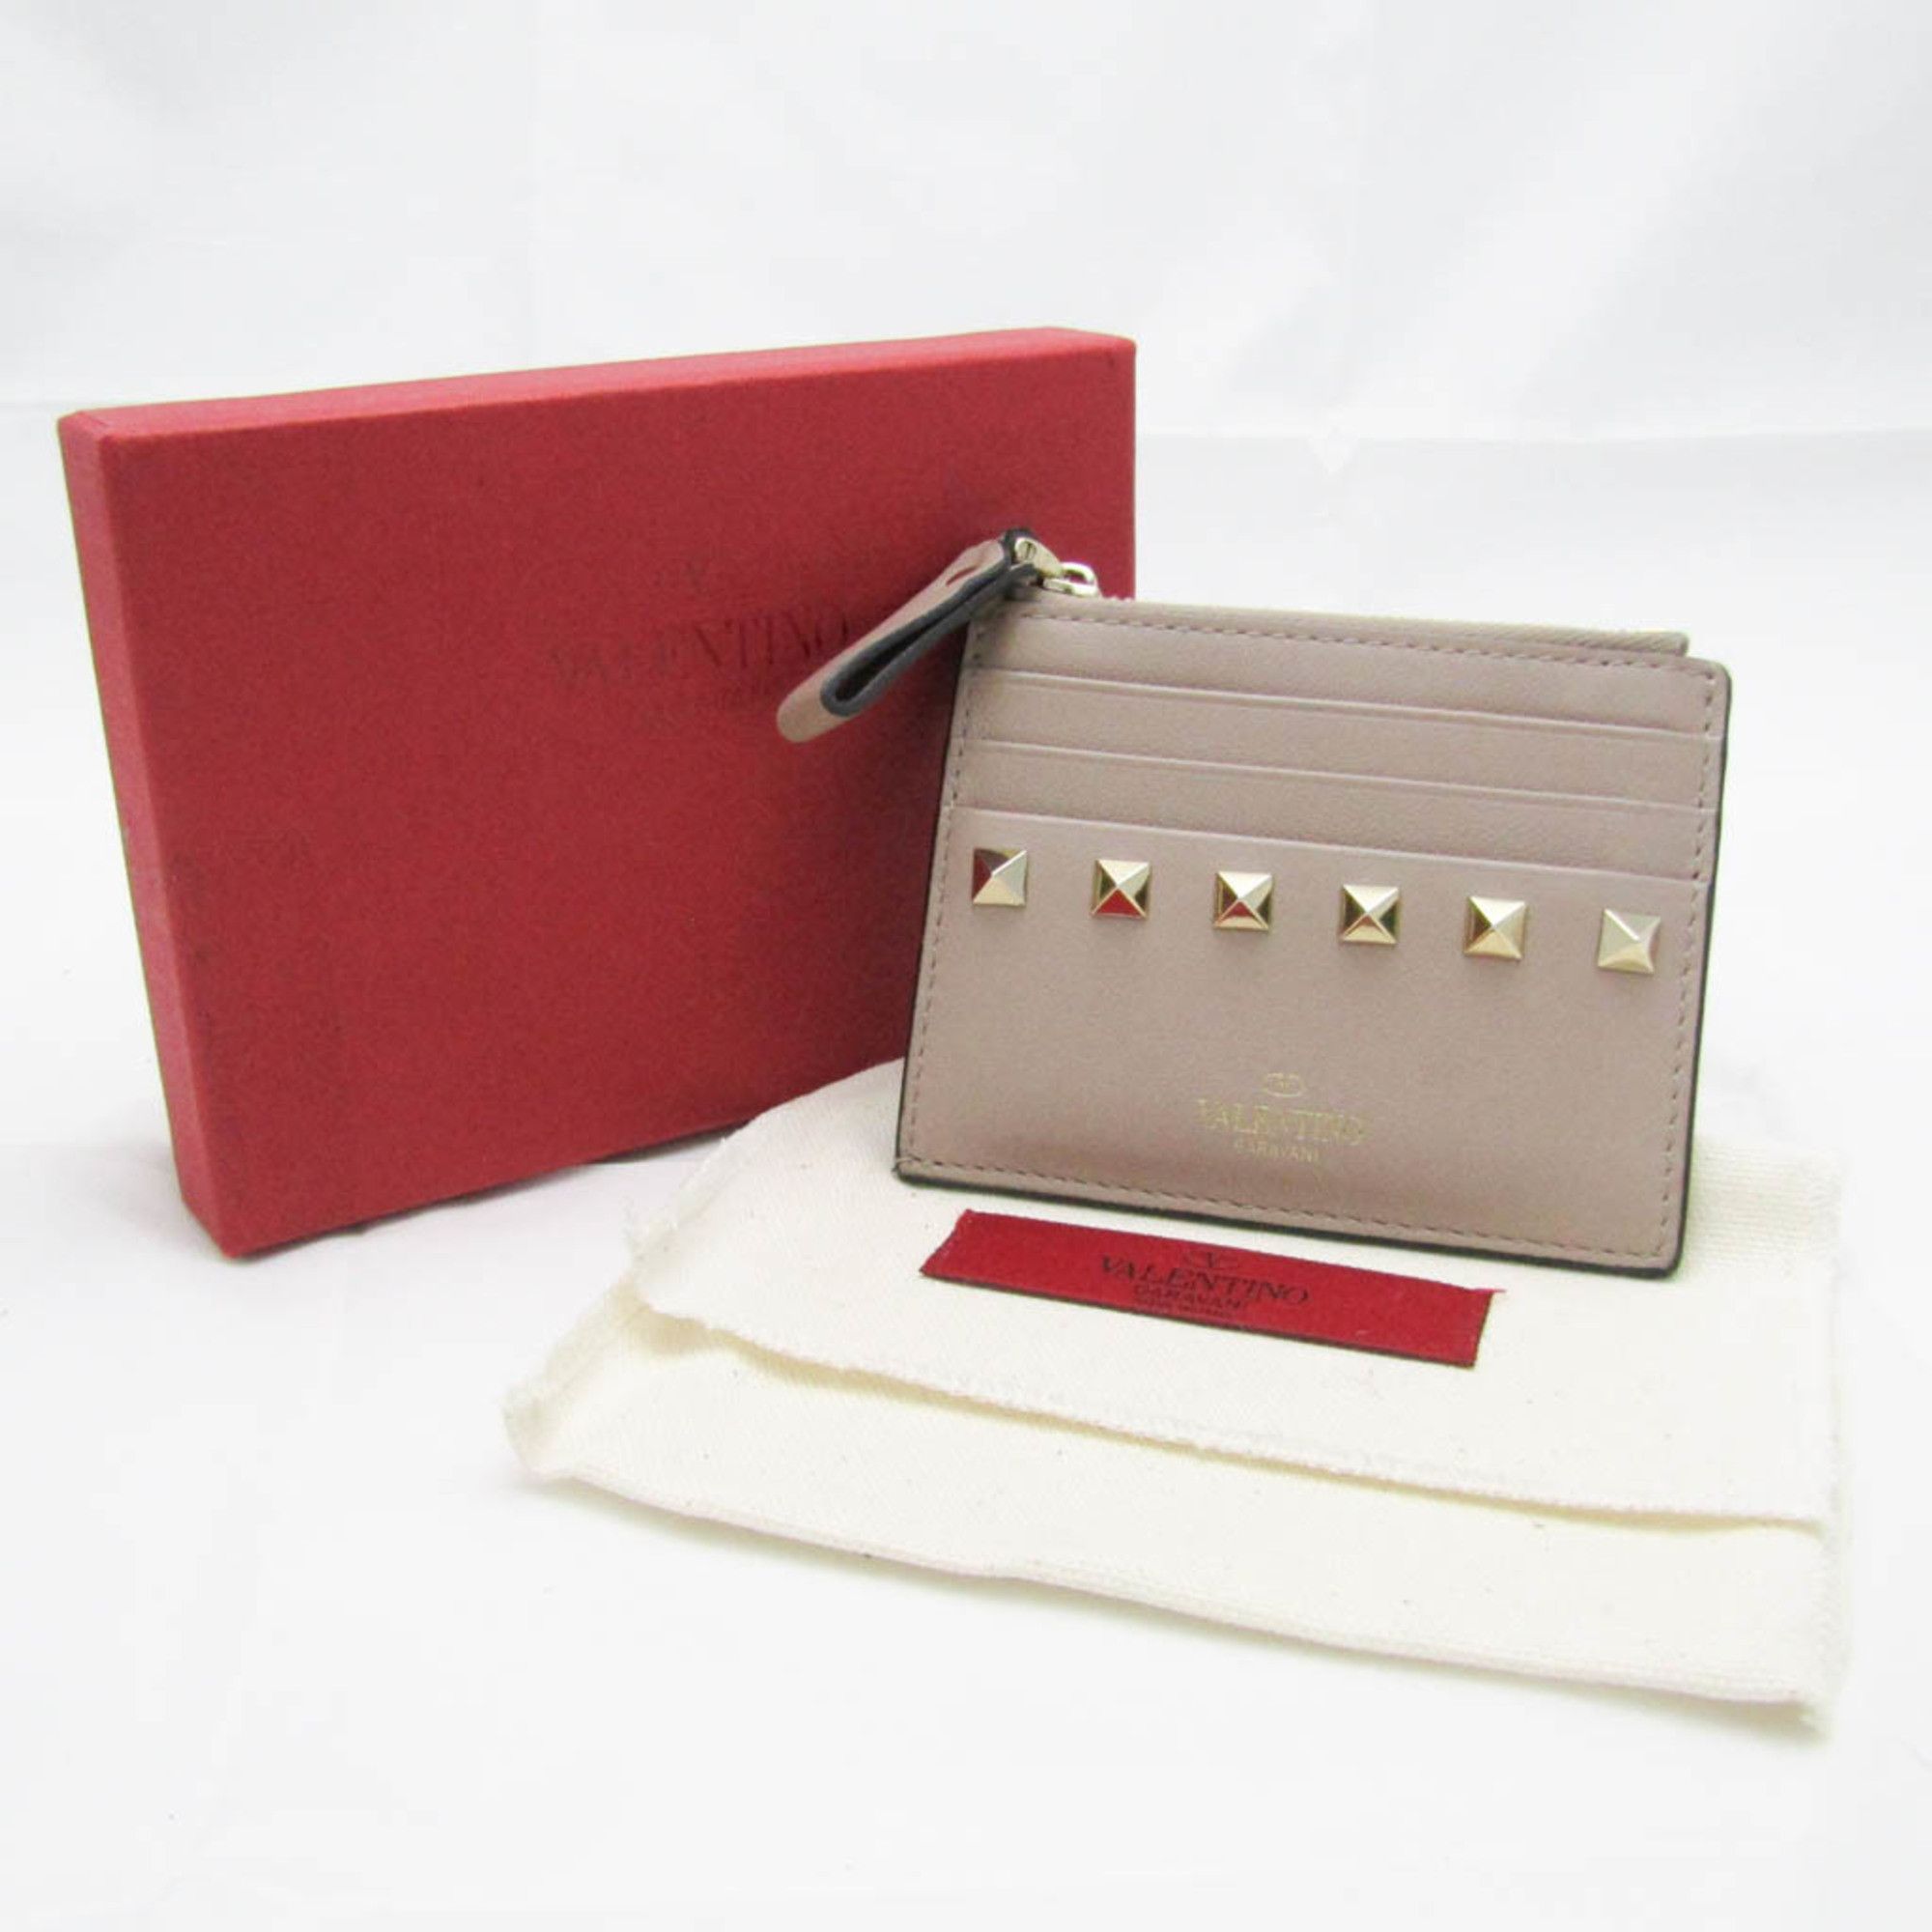 Valentino Garavani Valentino Garavani Lockstuds TW2P0T35BOL Leather Card Case Pink Beige Size ONE SIZE - 10 Preview